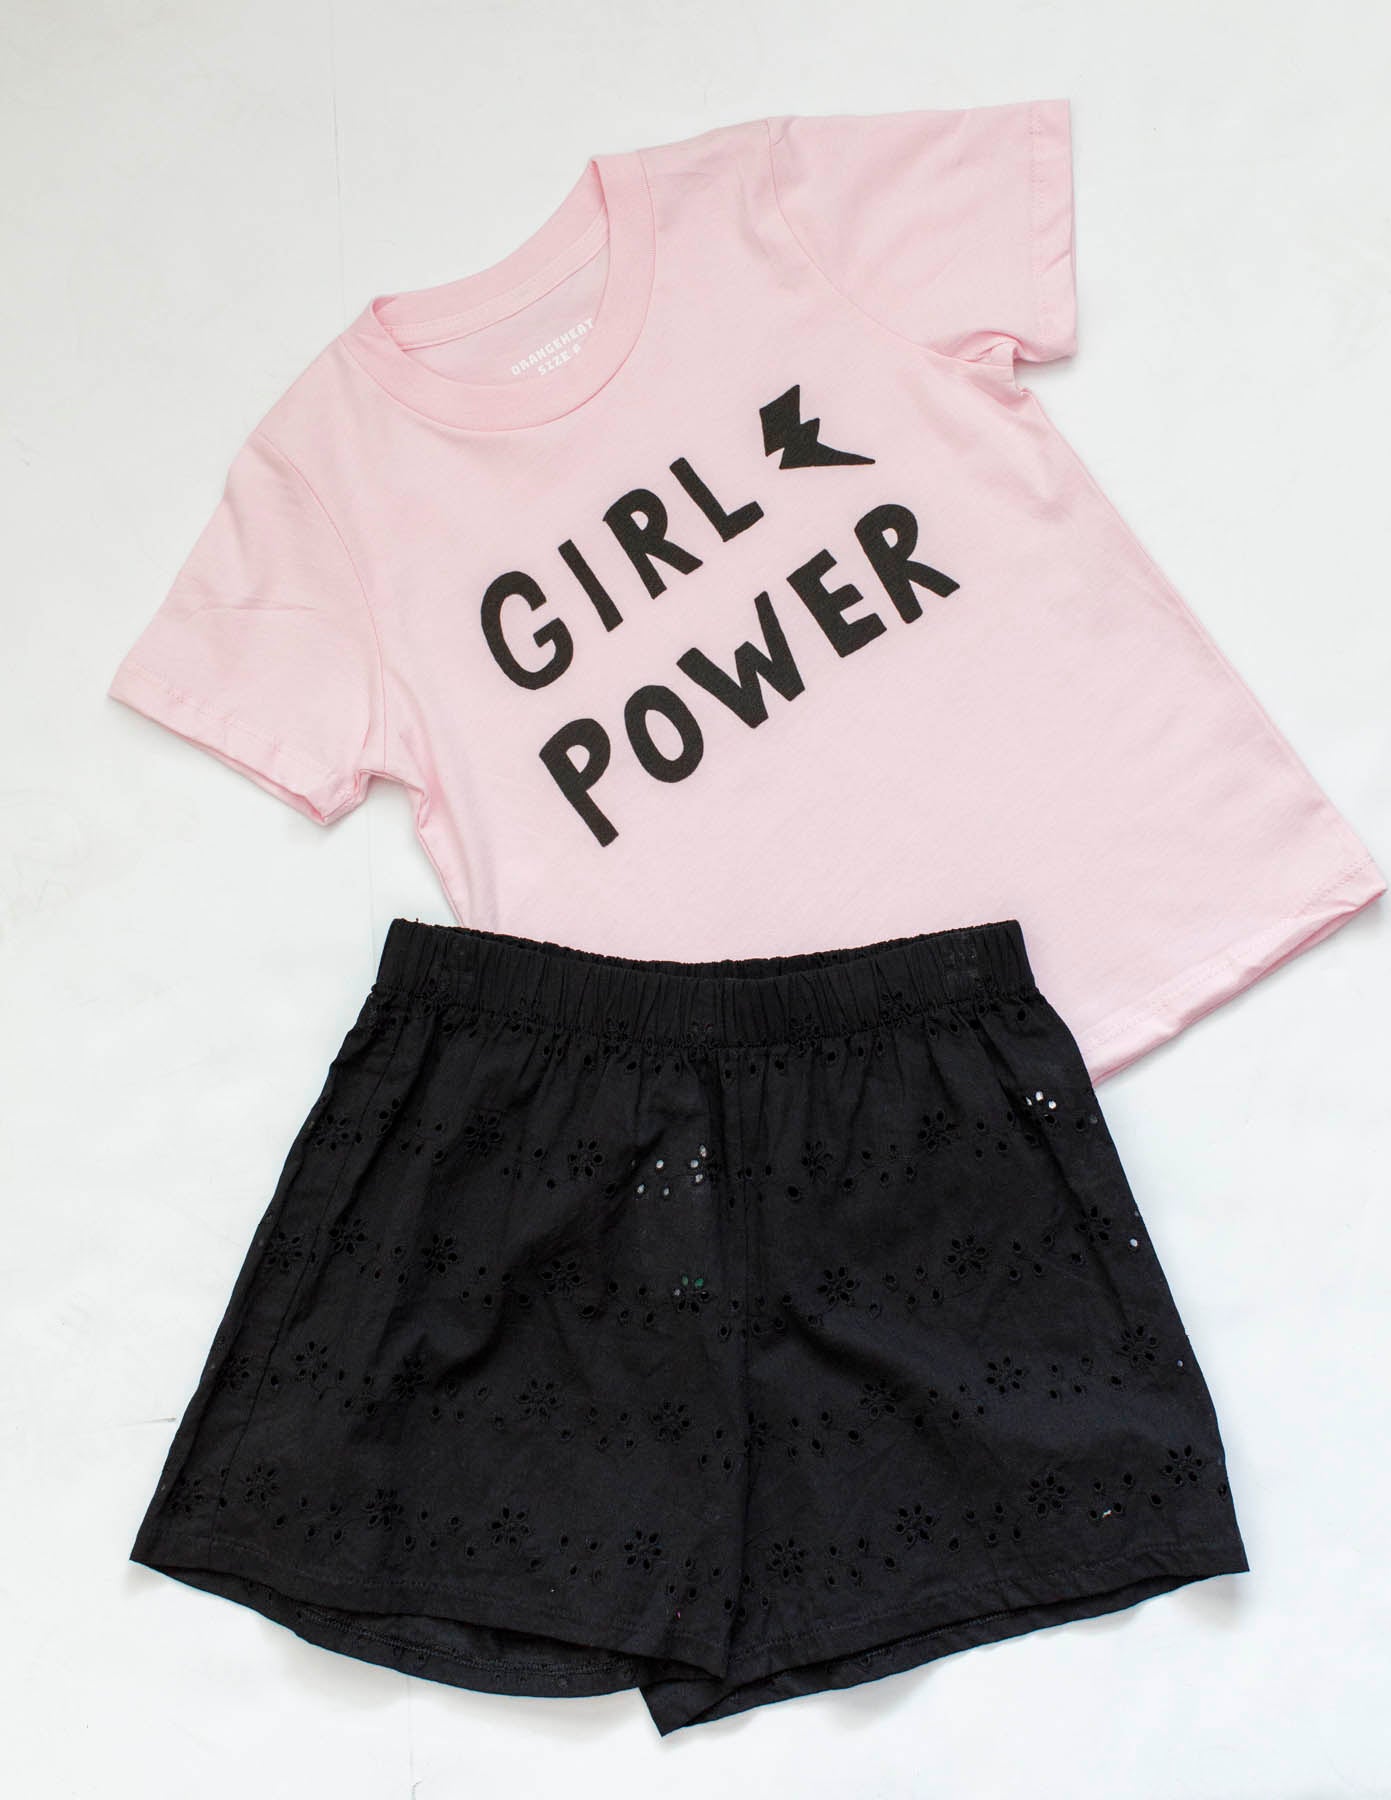 Girl Power Pink Tween Graphic Tee